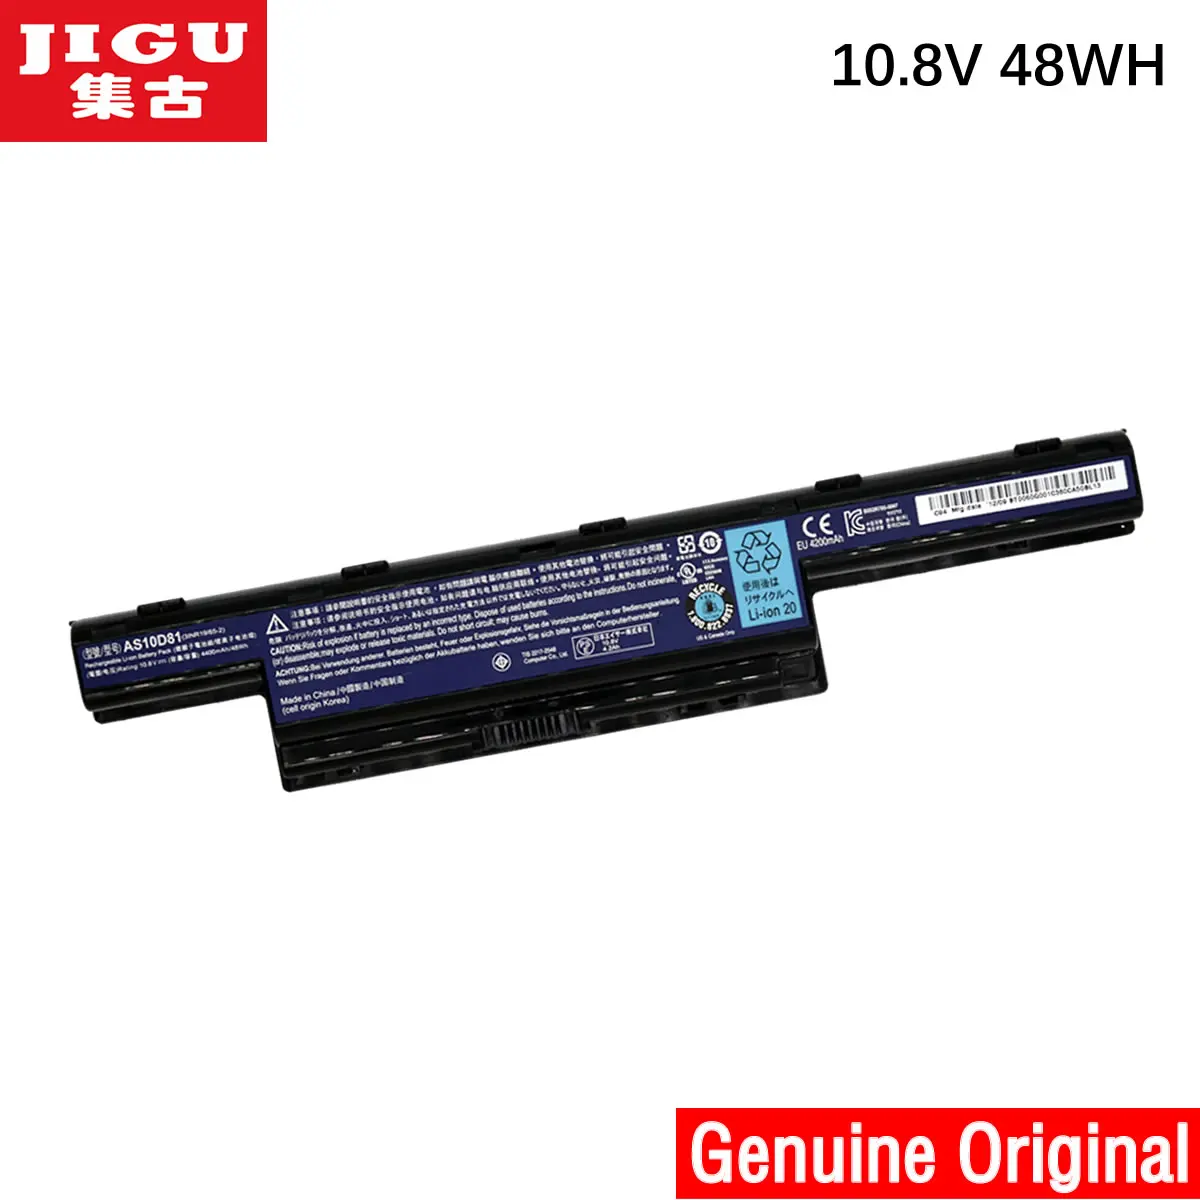 

JIGU Original Battery For Acer Aspire V3 5741 5742 5750 5551G 5560G 5741G 5742G 5750G AS10D31 AS10D51 AS10D61 AS10D71 AS10D75